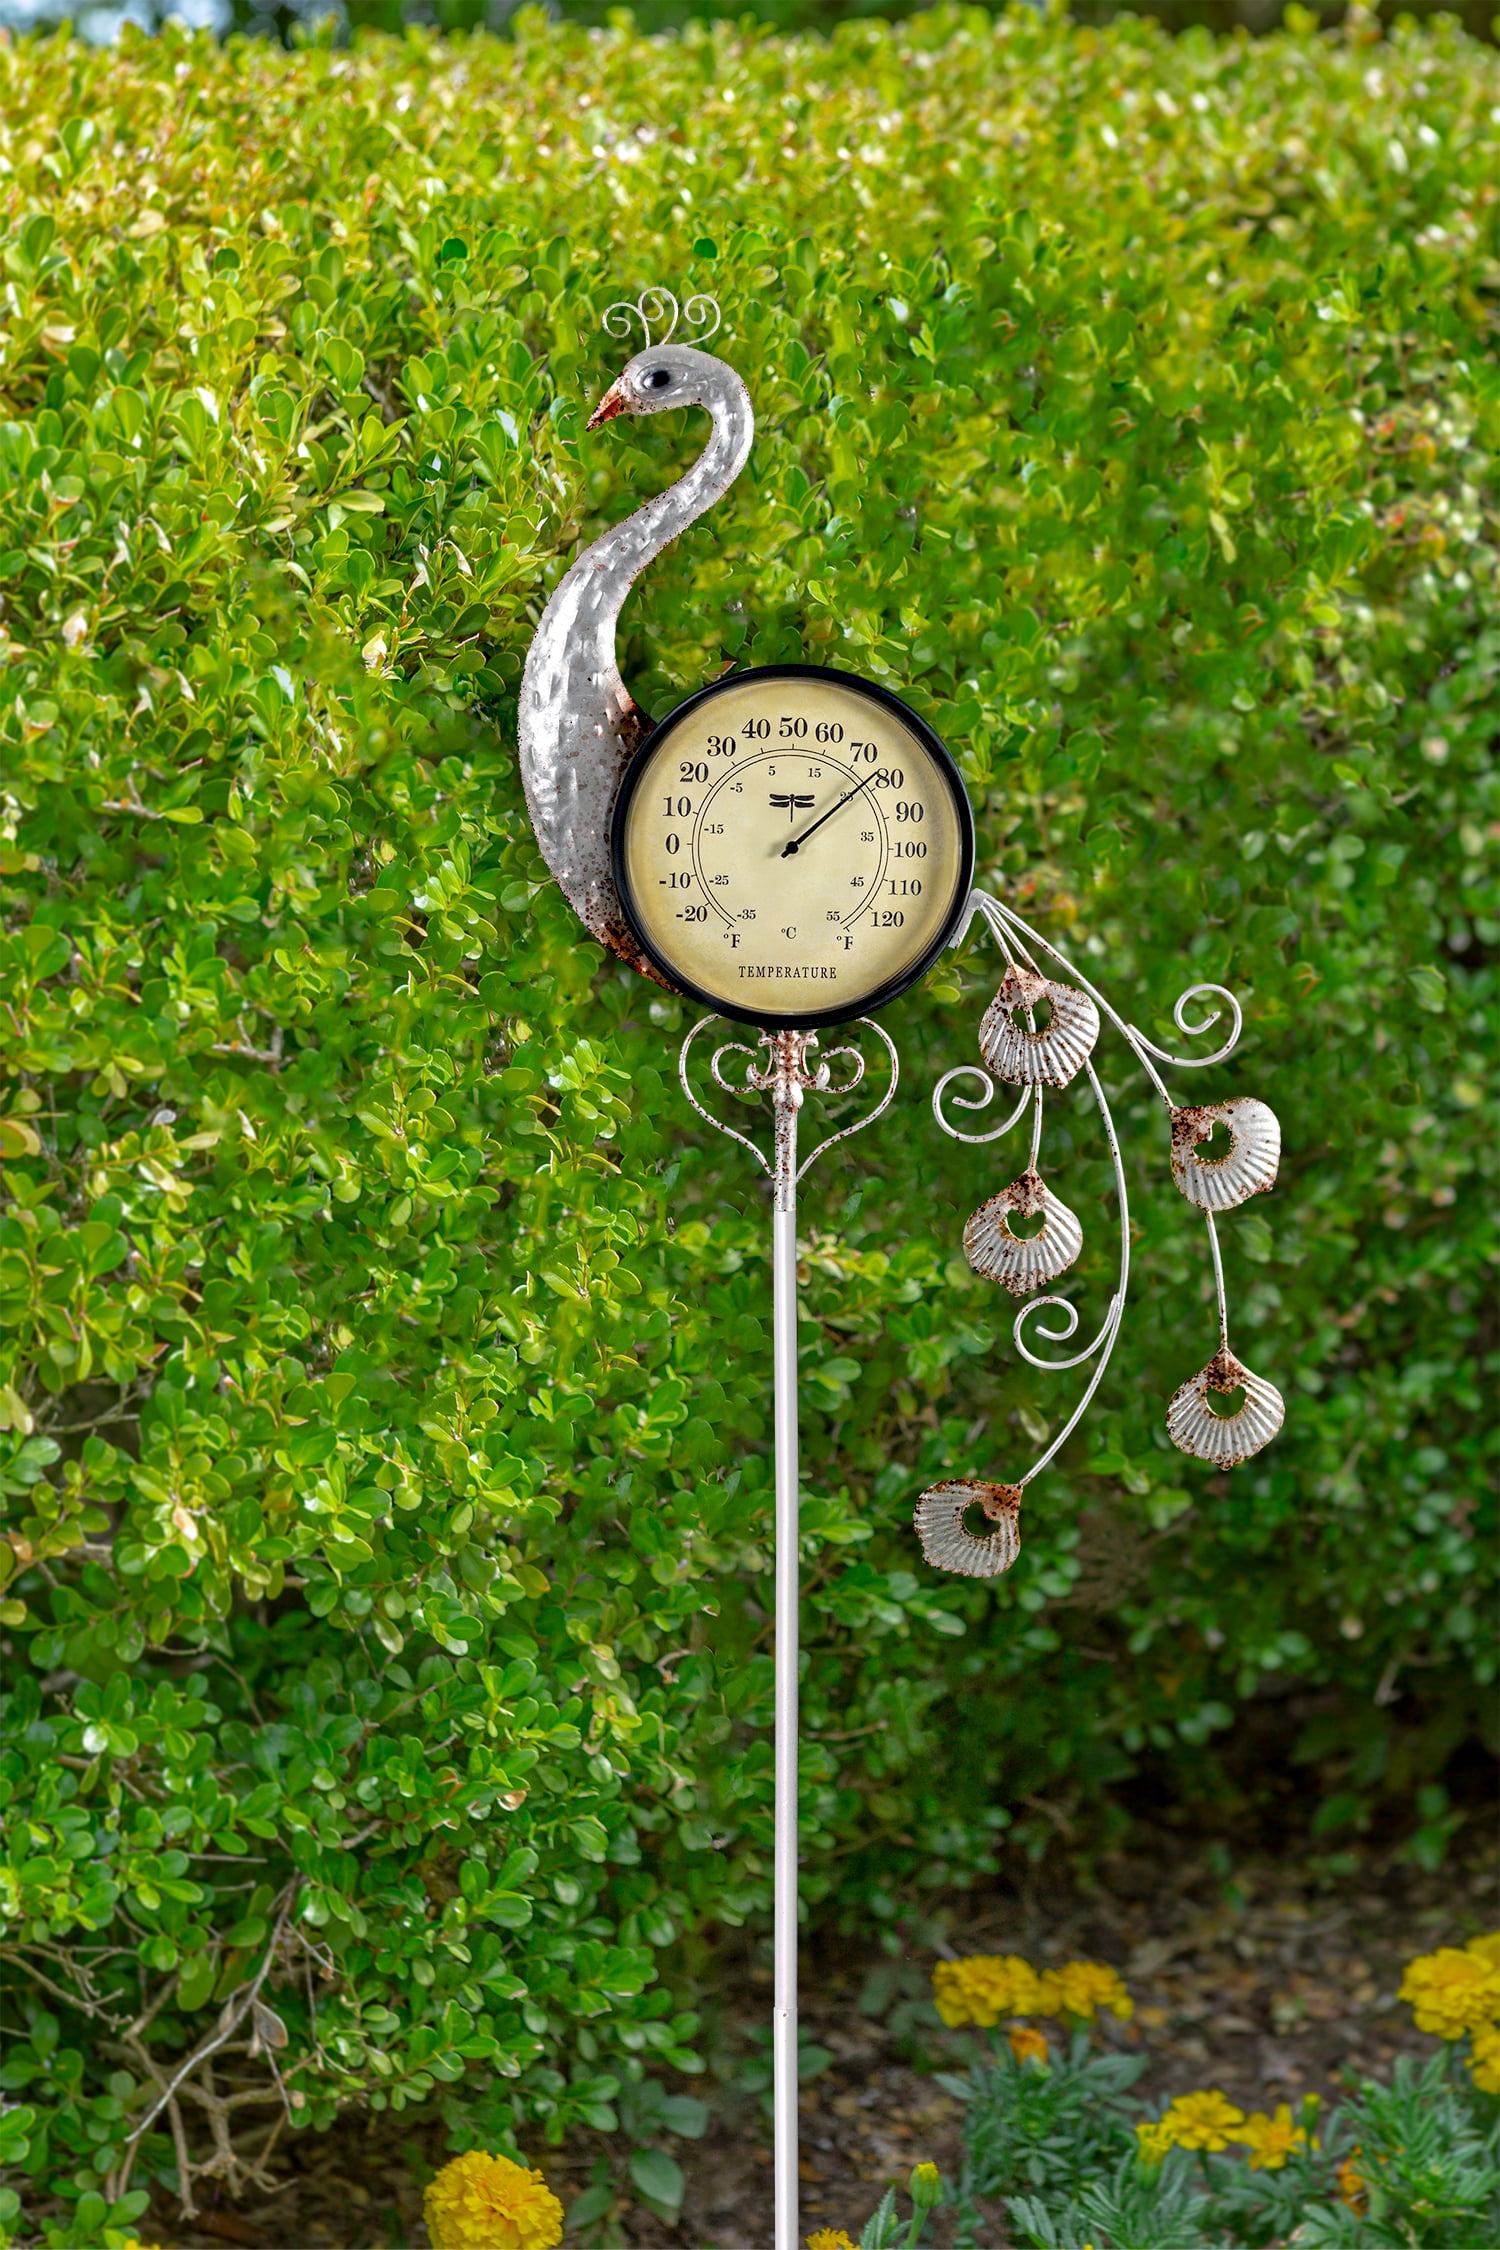 Outdoor Patio Garden Double Face Weather Gauge Pedestal Clock Analog  Thermometer New in Box - Garden Decor - Ventura, California, Facebook  Marketplace